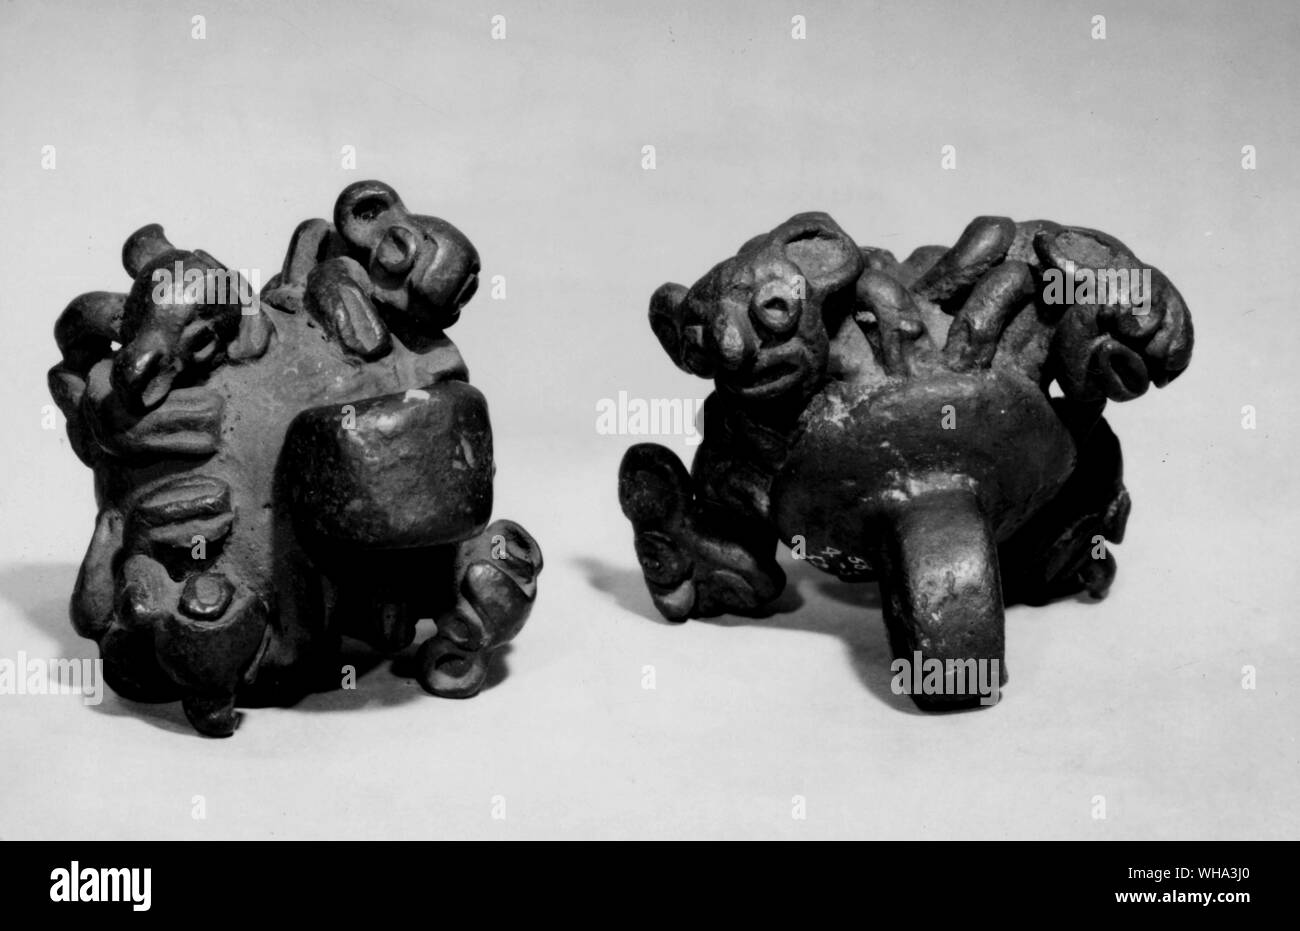 Castabels in bronzo con forme di animali in rilievo. Questi sono stati appesi su satves e jangled quando le doghe sono stati stumped sul terreno ritmicamente durante le danze. Foto Stock